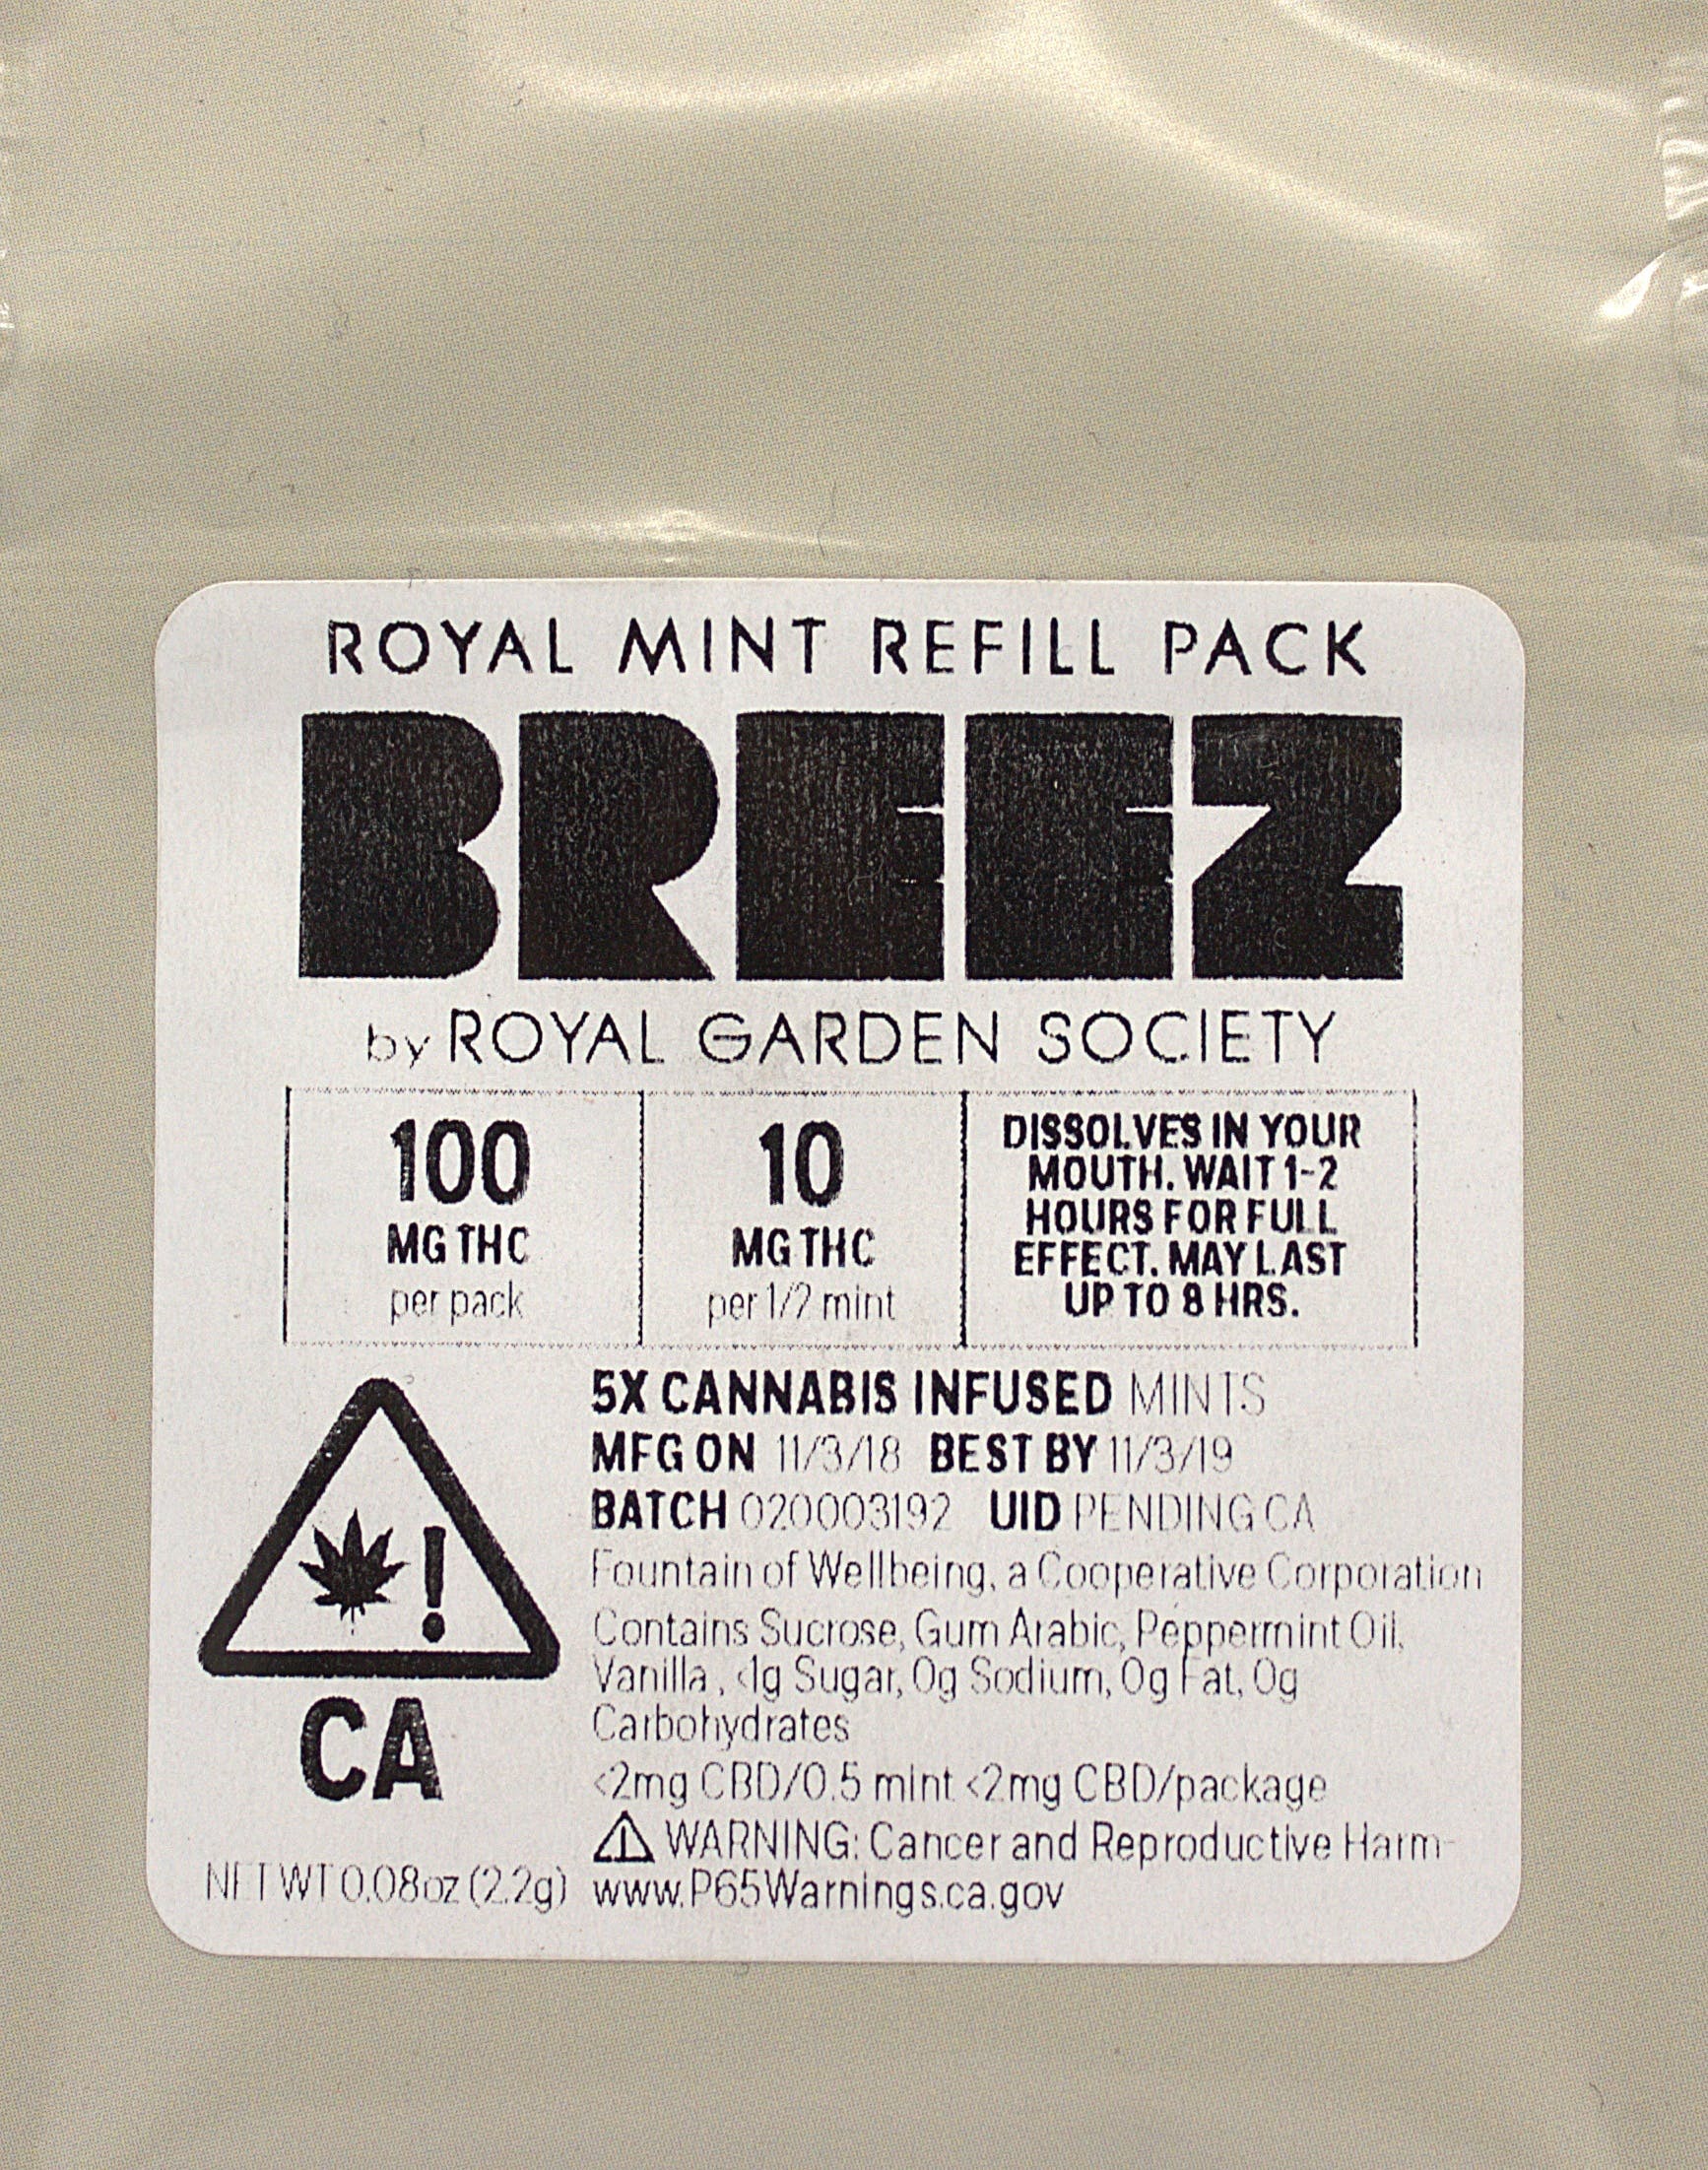 edible-breez-royal-mints-refill